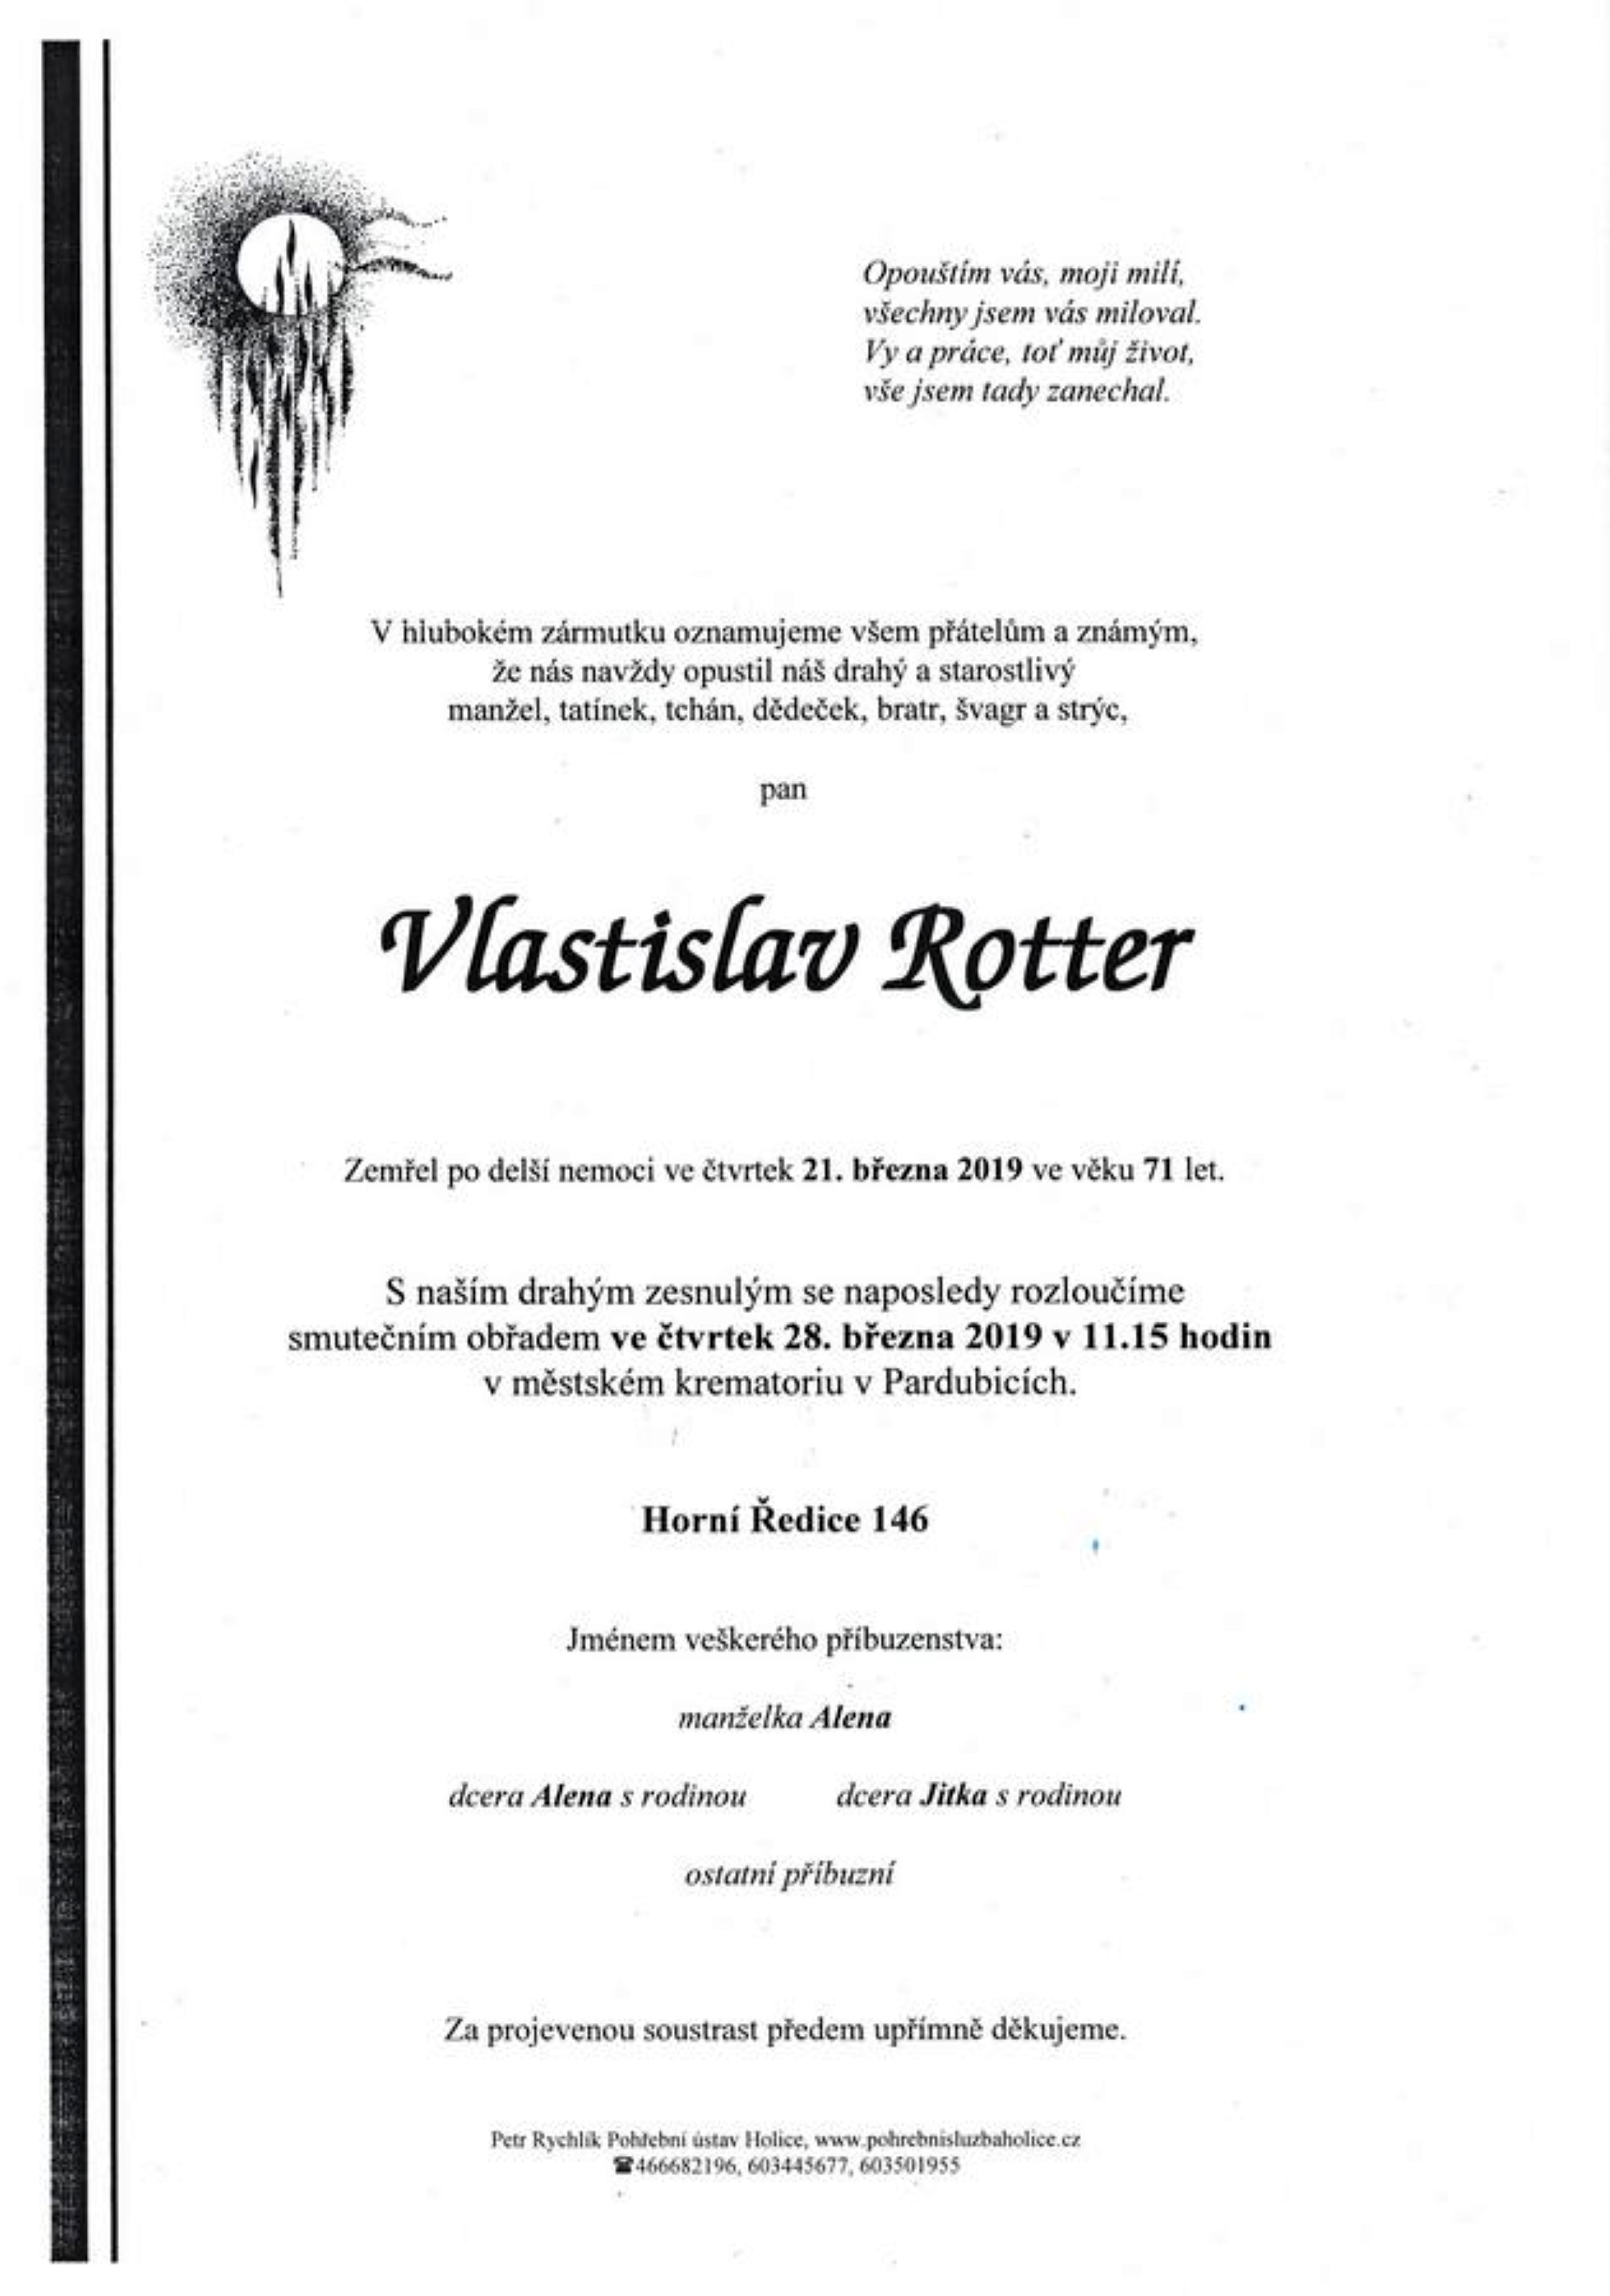 Vlastislav Rotter